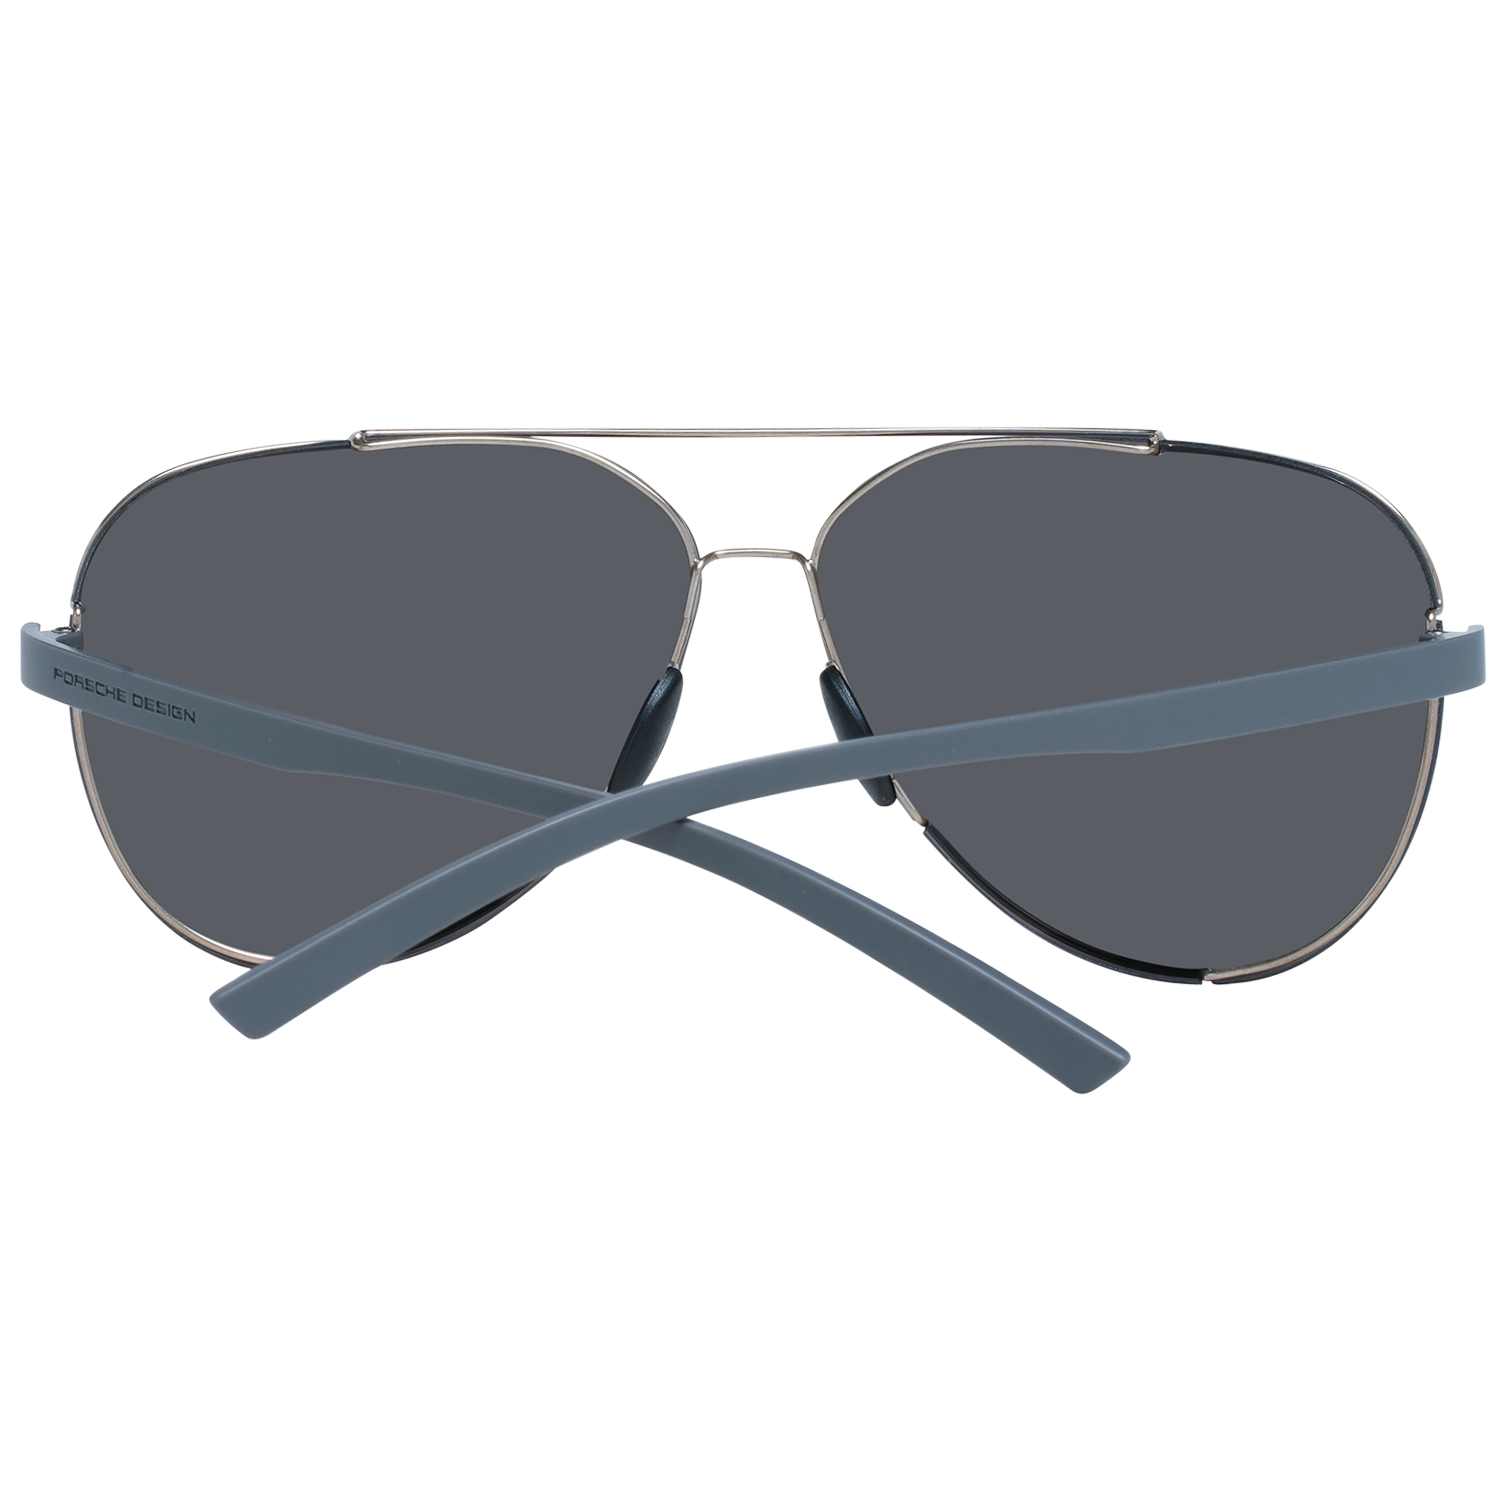 Porsche Design Sunglasses Porsche Design Sunglasses P8682 D 64 Mirrored Eyeglasses Eyewear UK USA Australia 